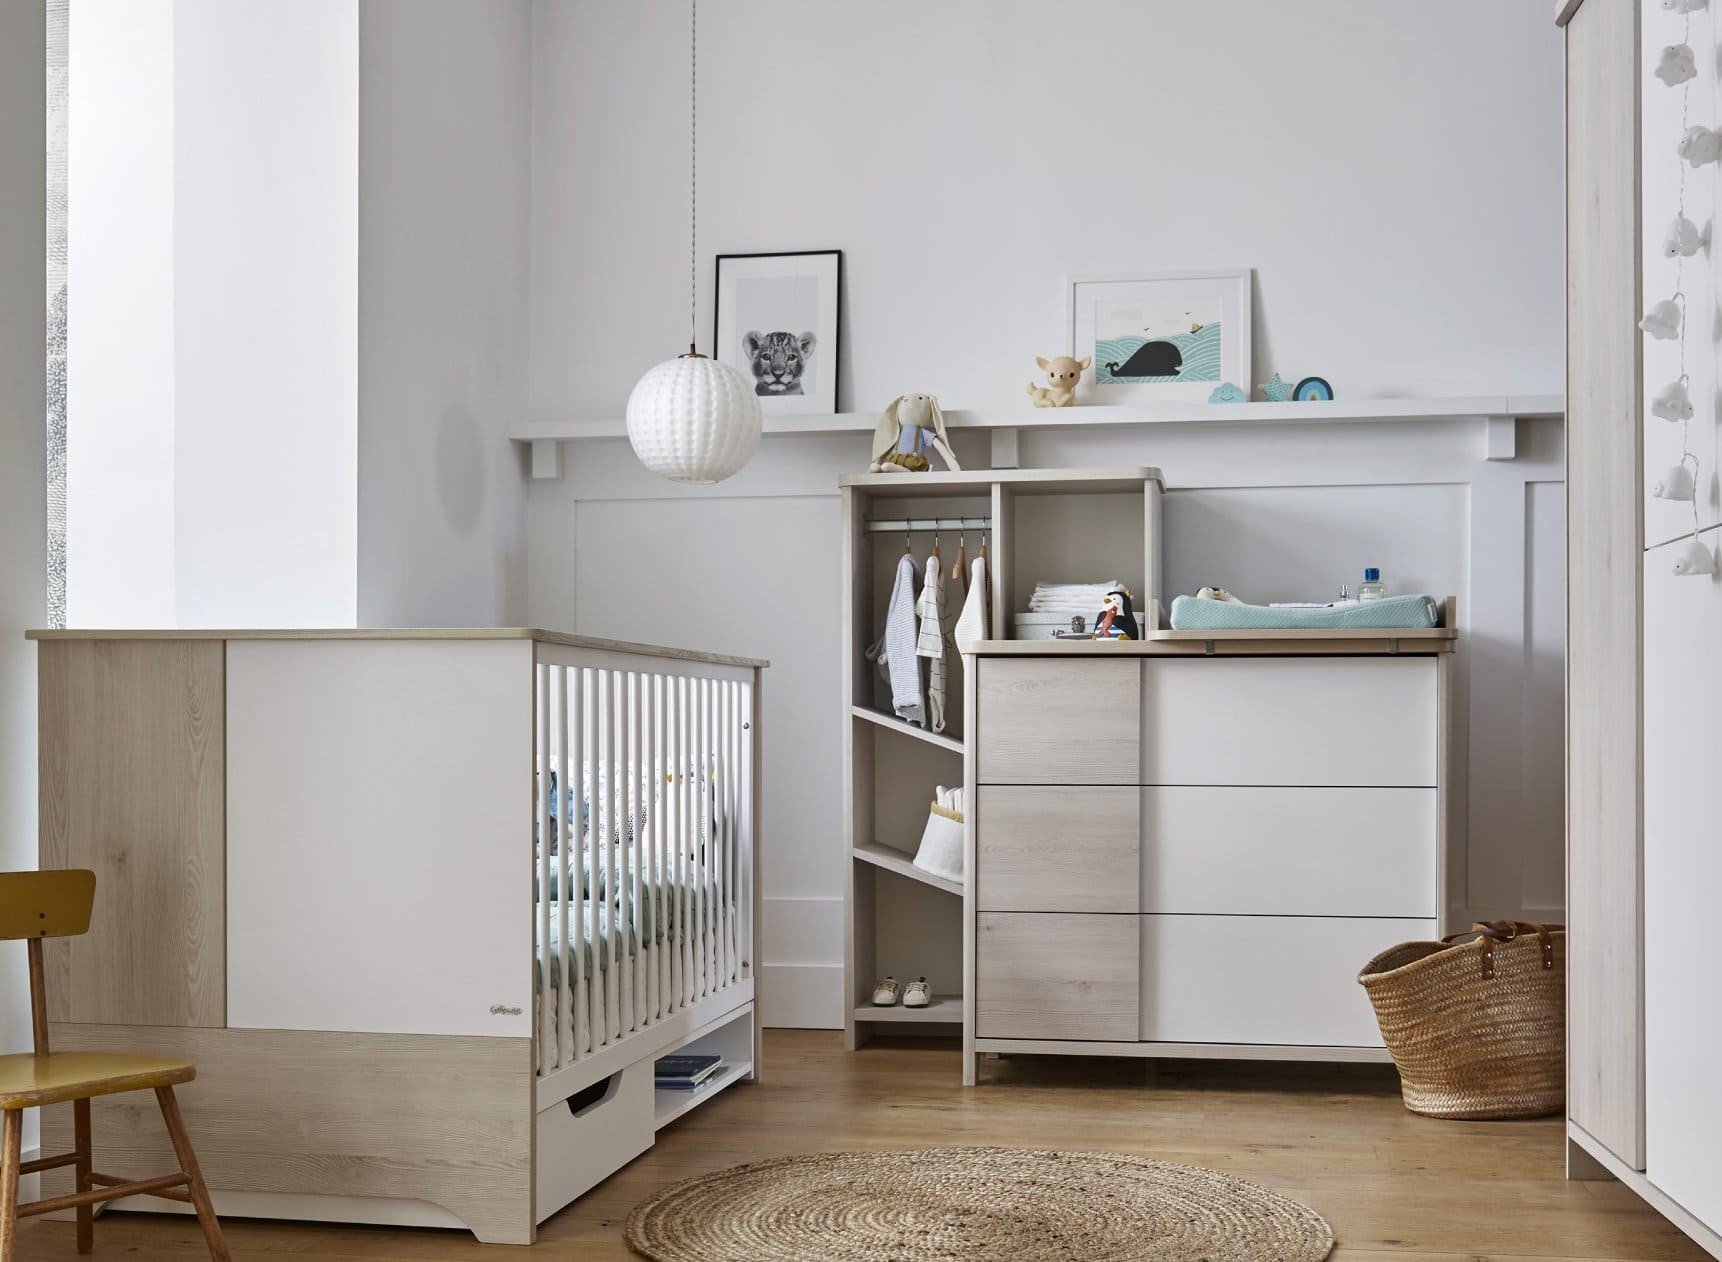 Chambre bébé Complète SALTO : une chambre bébé bois écoresponsable